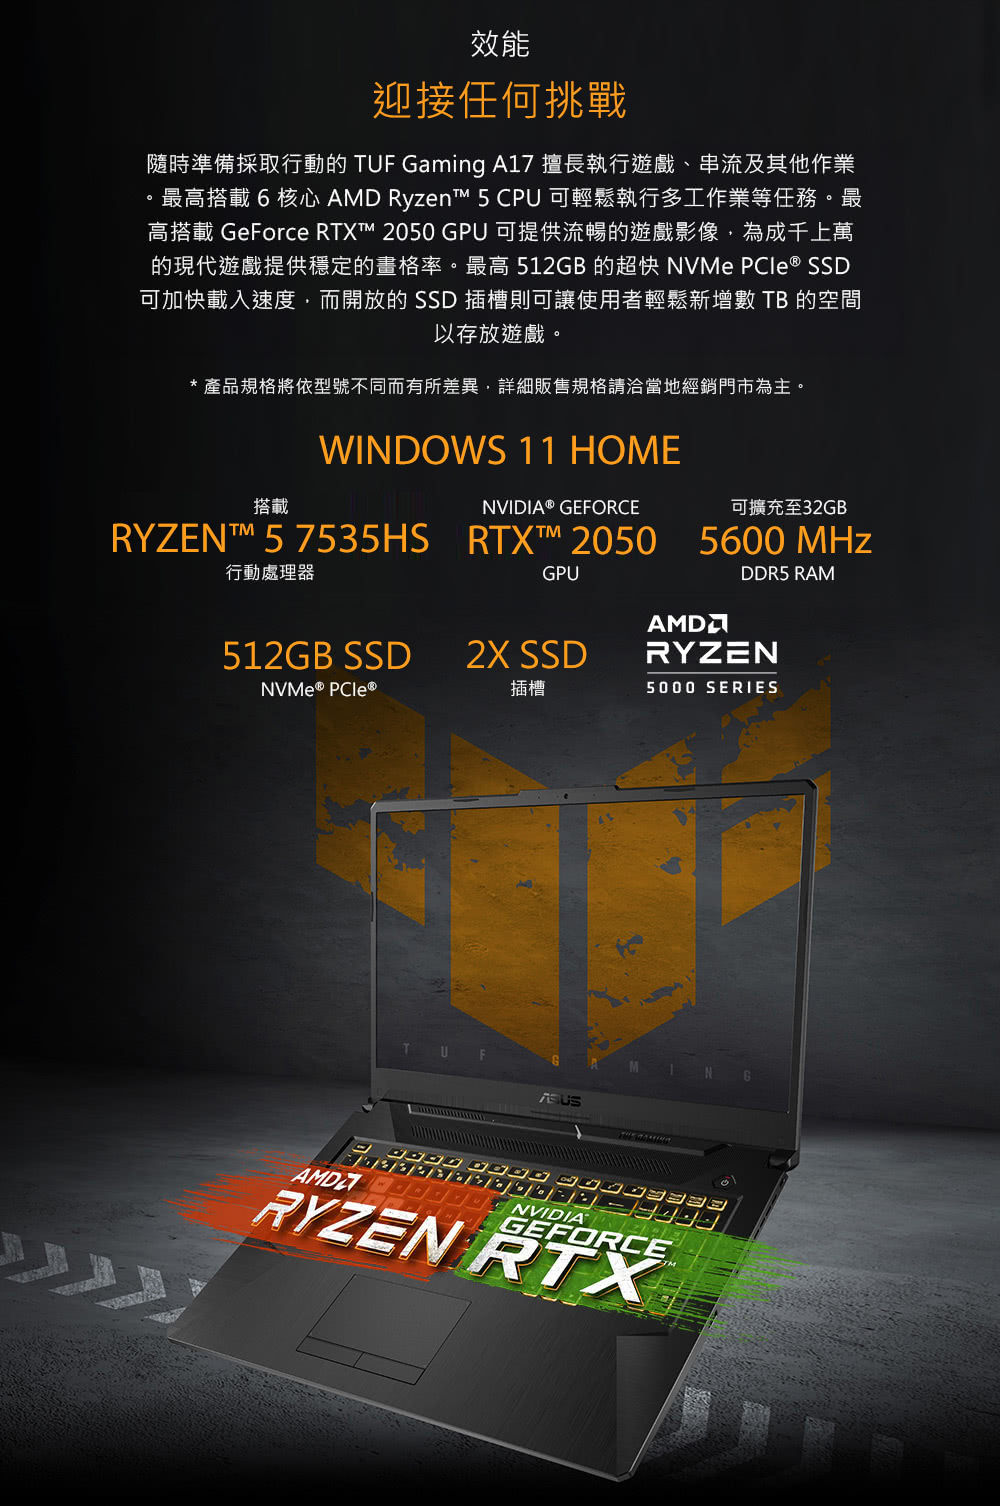 高搭載 GeForce RTX 2050 GPU 可提供流暢的遊戲影像,為成千上萬